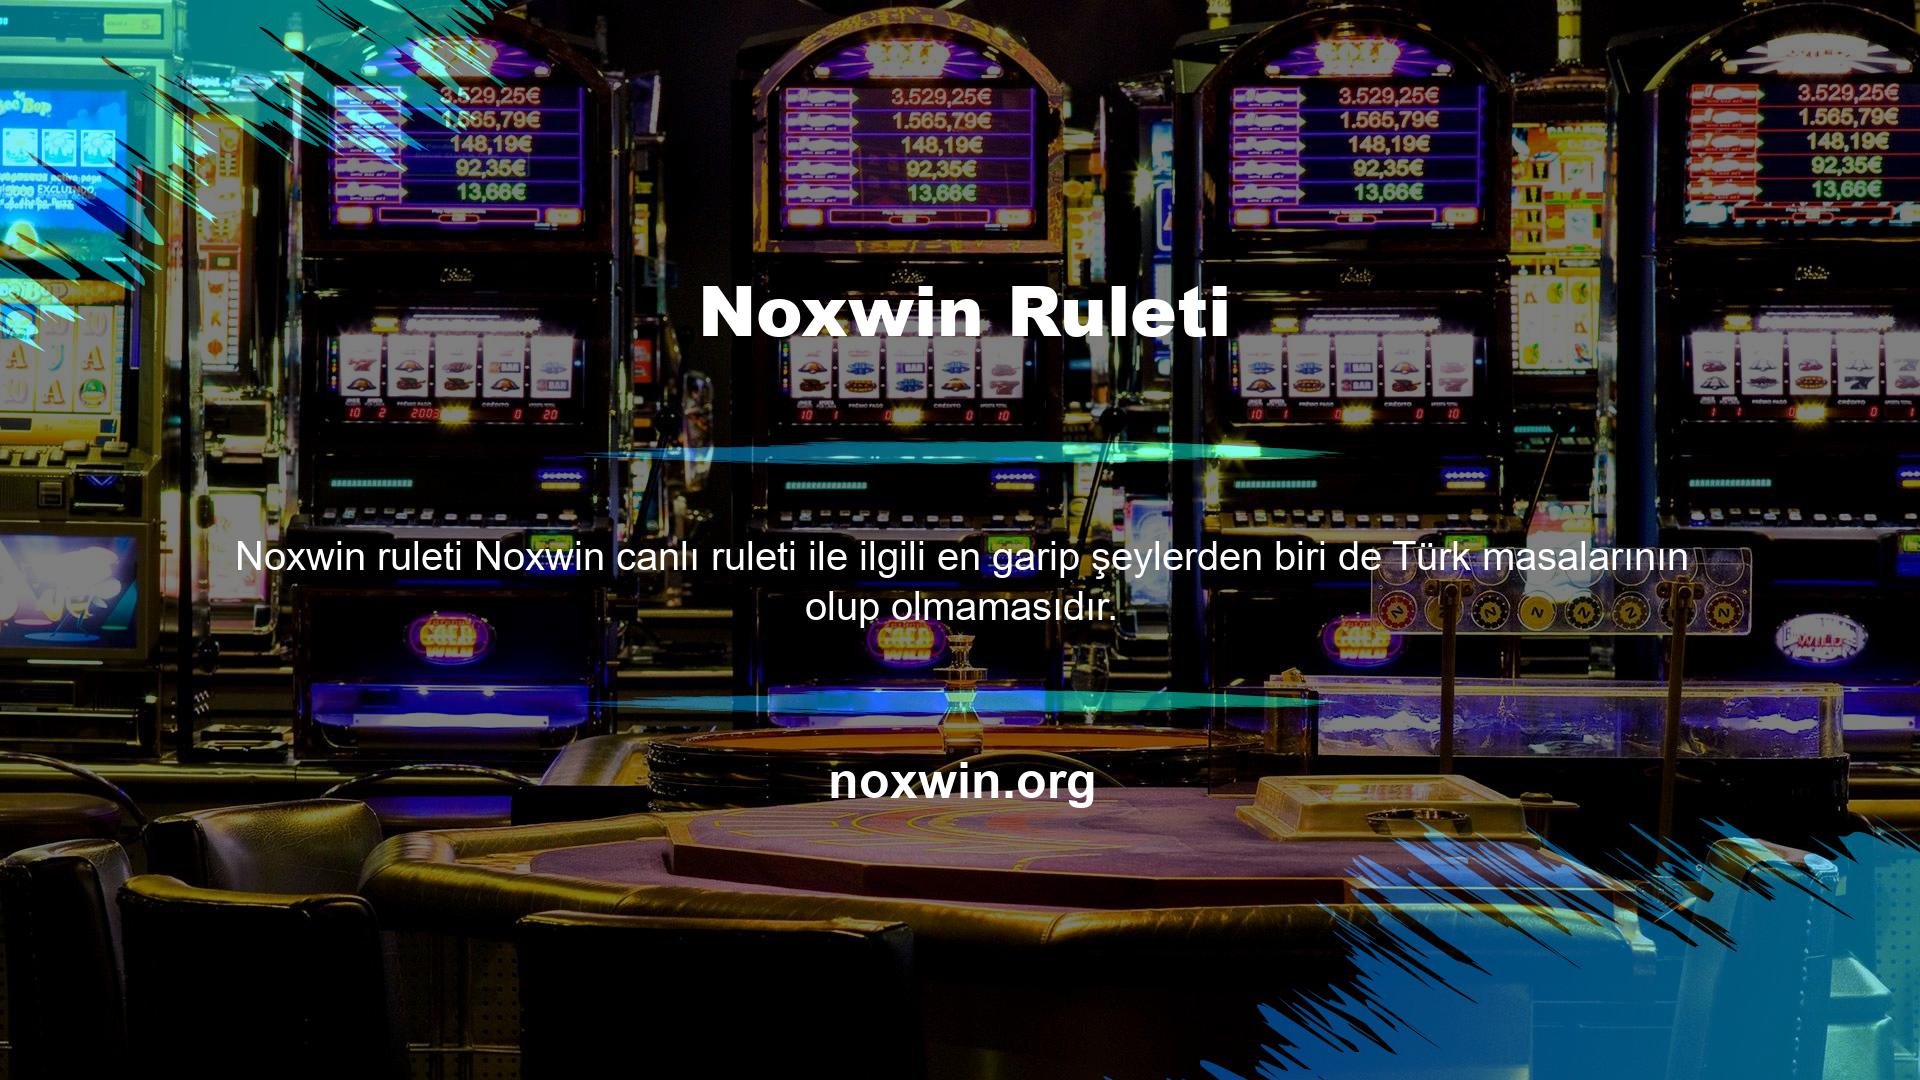 Noxwin ana sayfasından Canlı Casino menüsüne girdiğinizde karşınıza masalar listelenecektir